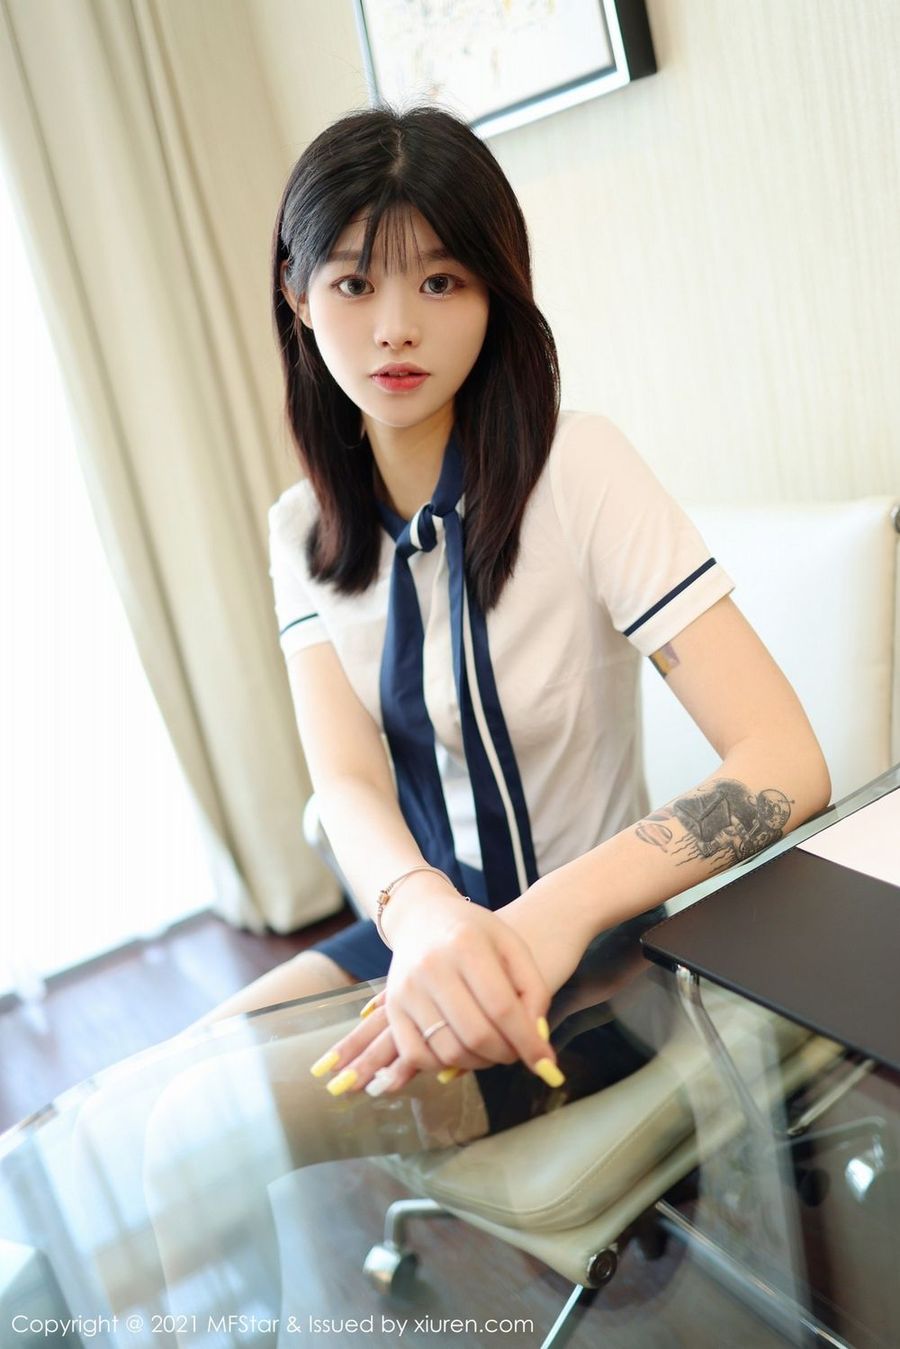 新人模特77qiqi校园风格学生装丝袜系列首套写真